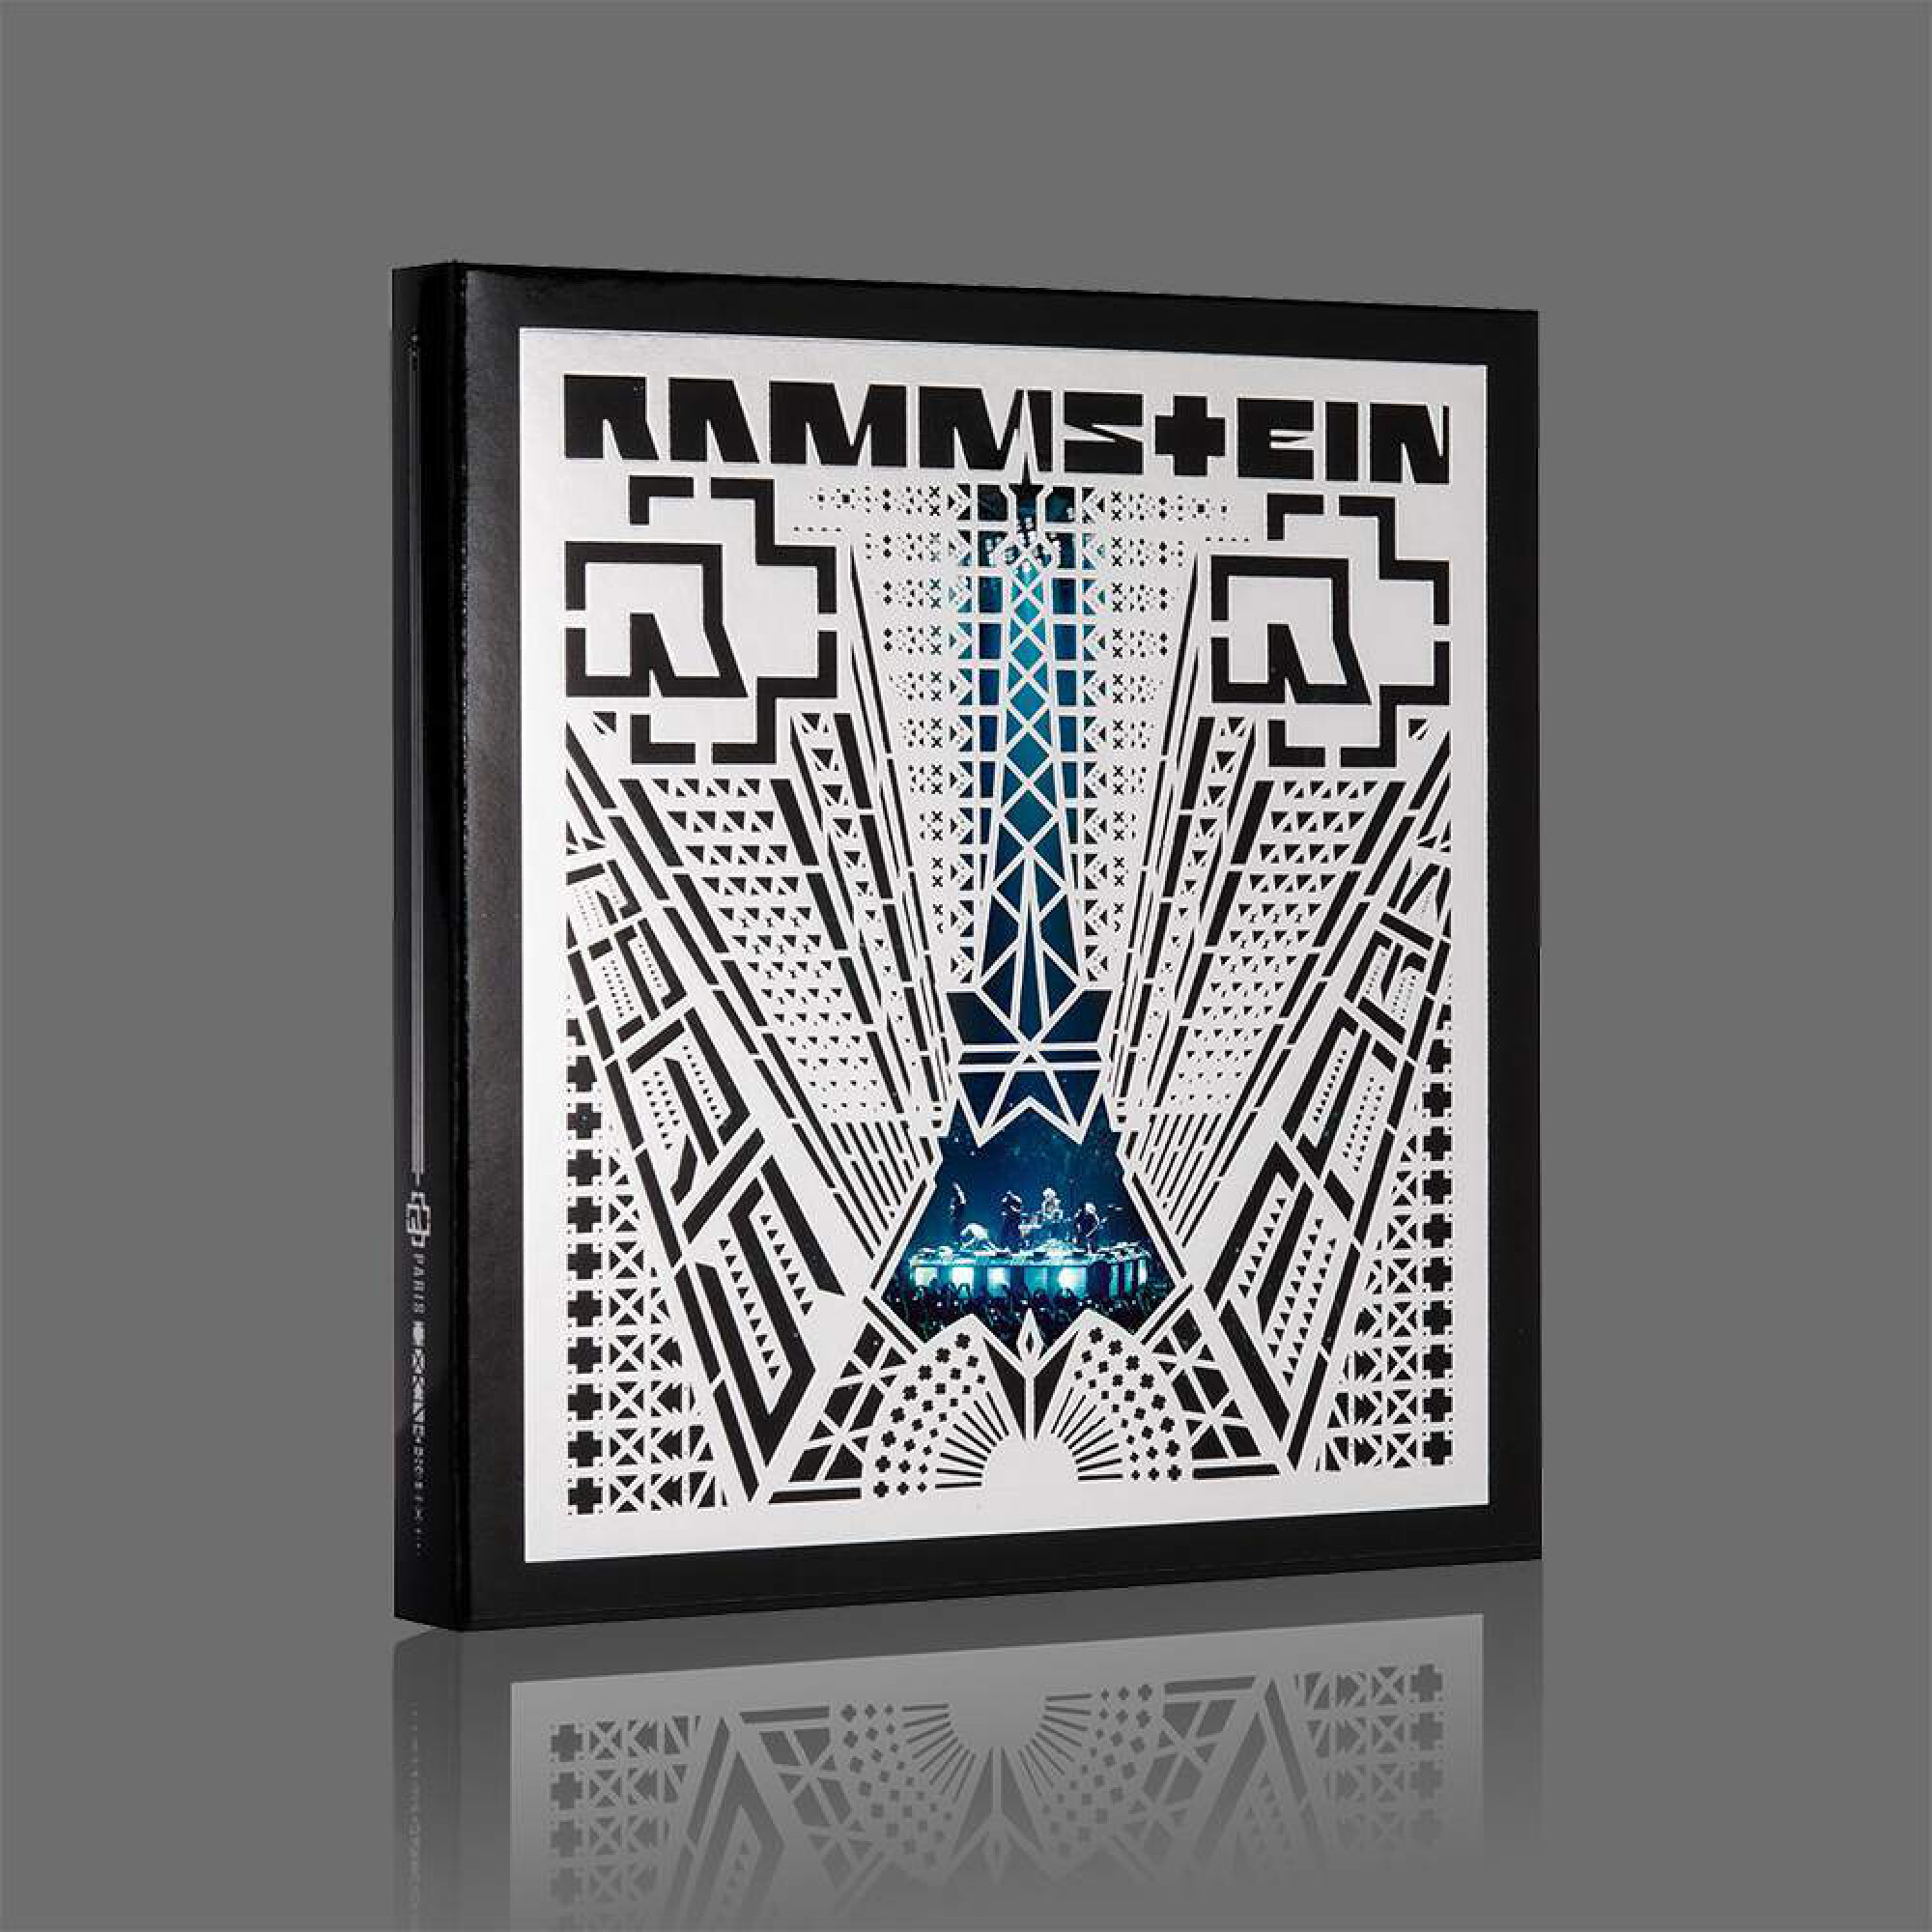 Rammstein Concert Album ”Rammstein: Paris”, | Rammstein-Shop